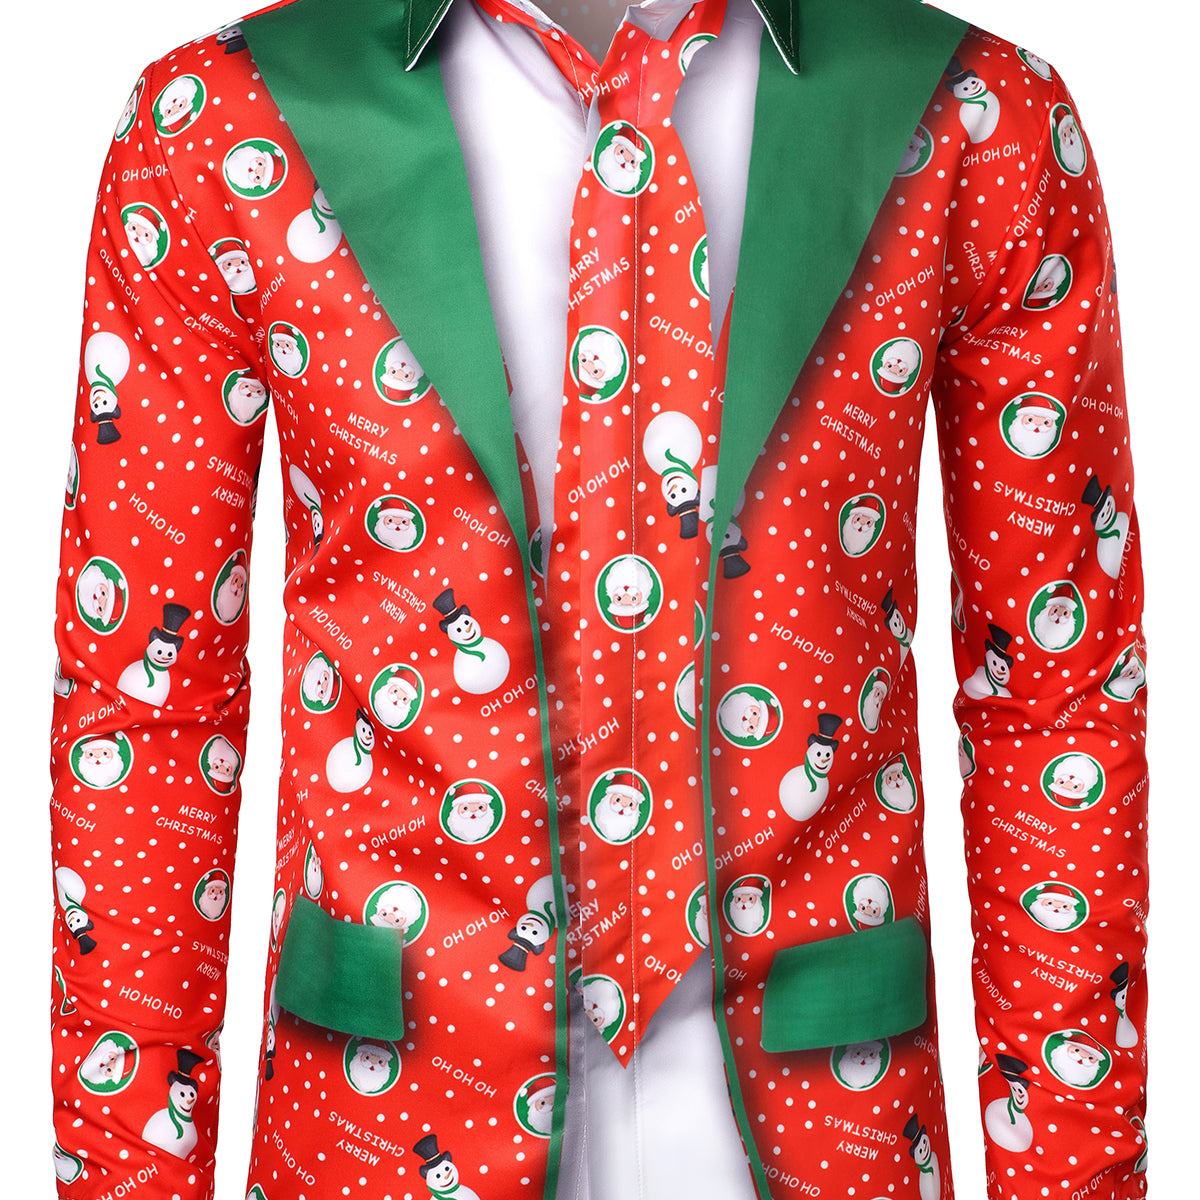 Men's Christmas Snowman Santa Print Funny Outfit Xmas Themed Vacation Long Sleeve Shirt